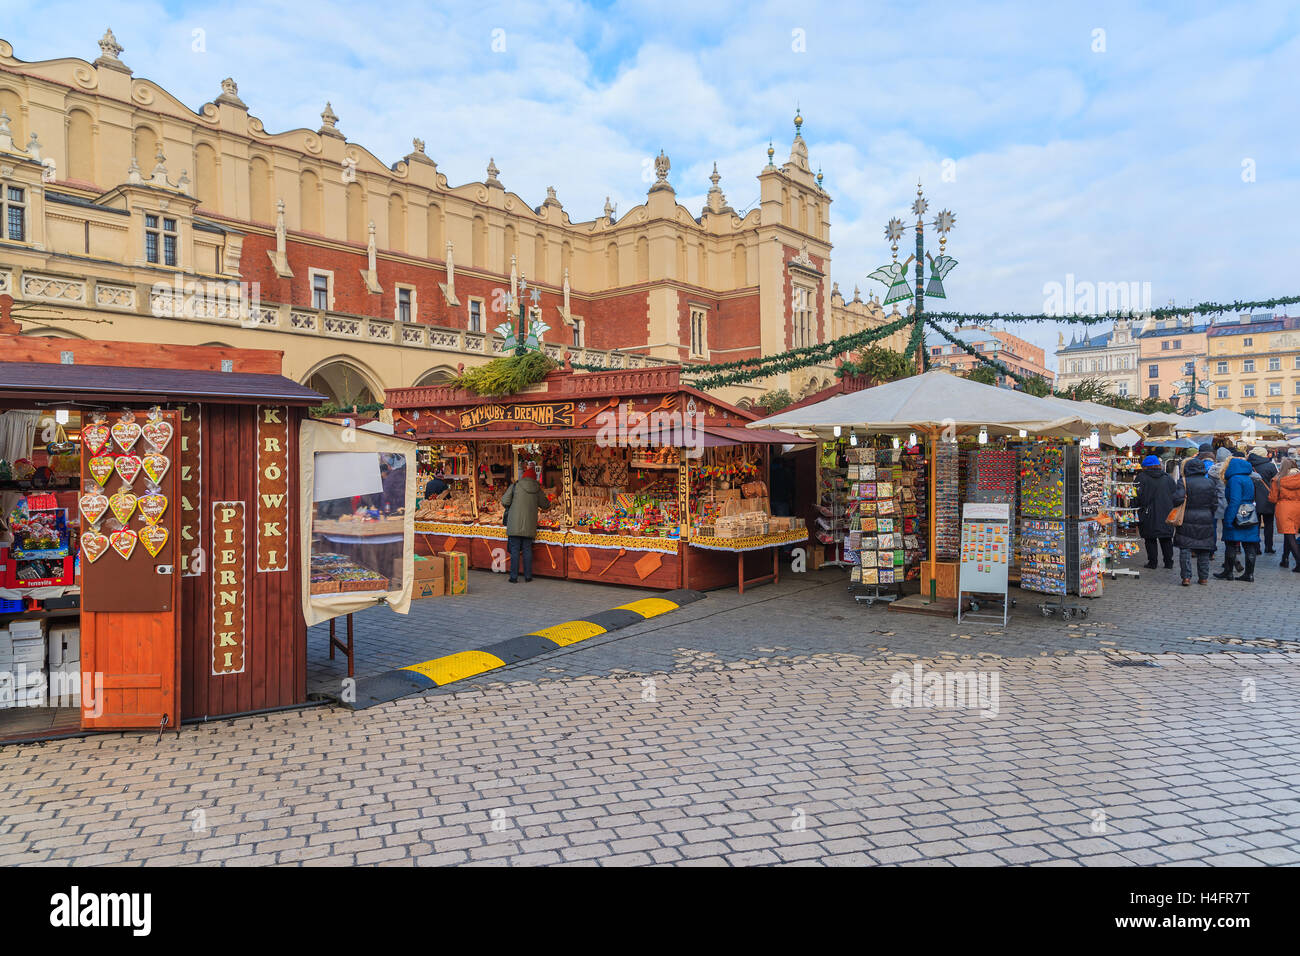 Cracovia in Polonia - Dic 10, 2014: tradizionale mercatino di Natale di Cracovia. Molti turisti visitano questa famosa città europea di acquistare i prodotti tradizionali della Polonia e godetevi il tempo di Natale. Foto Stock